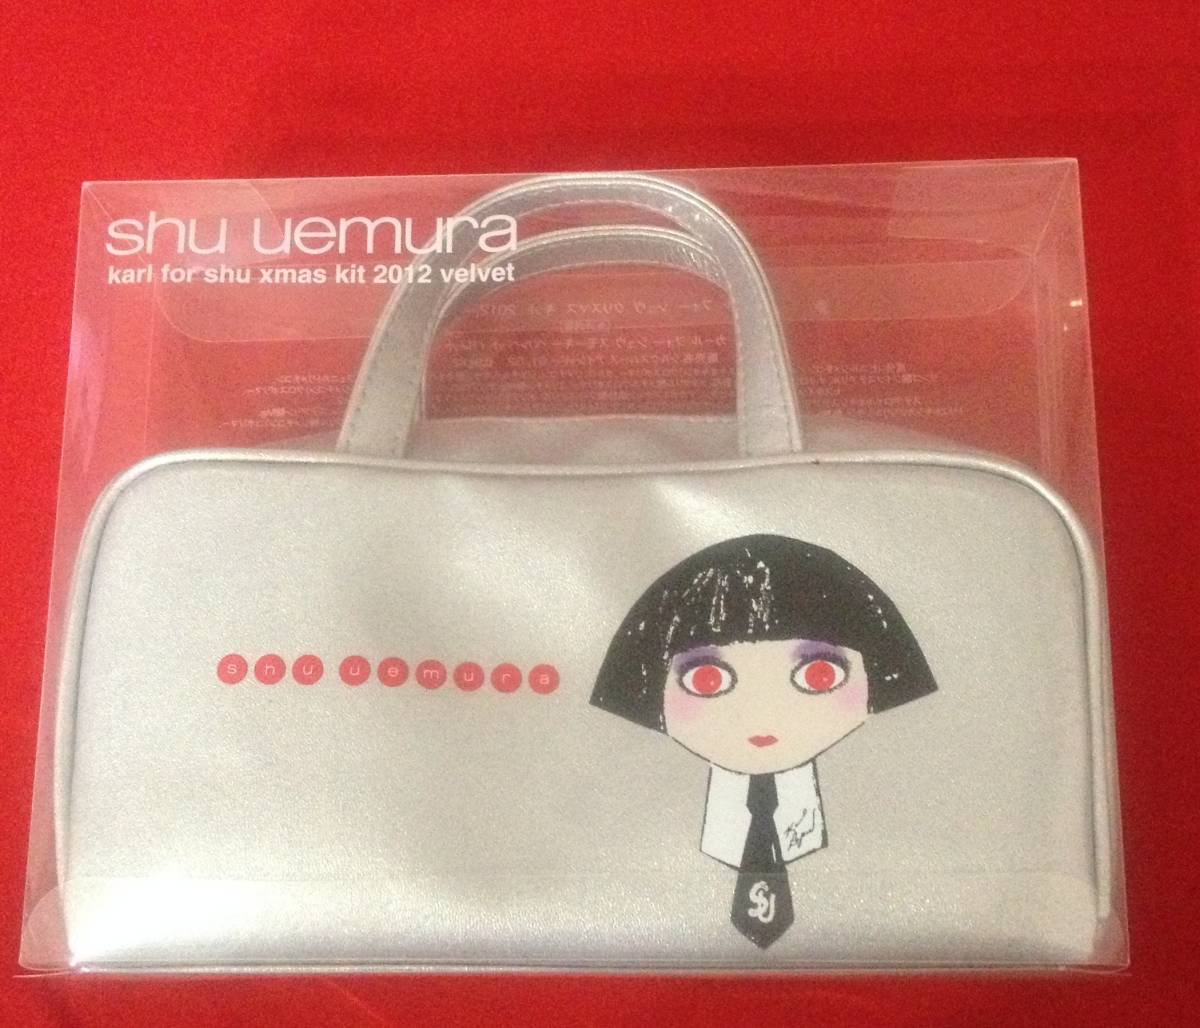  Shu Uemura *SHU UEMURA* unused * eyeshadow set * Karl four Christmas kit 